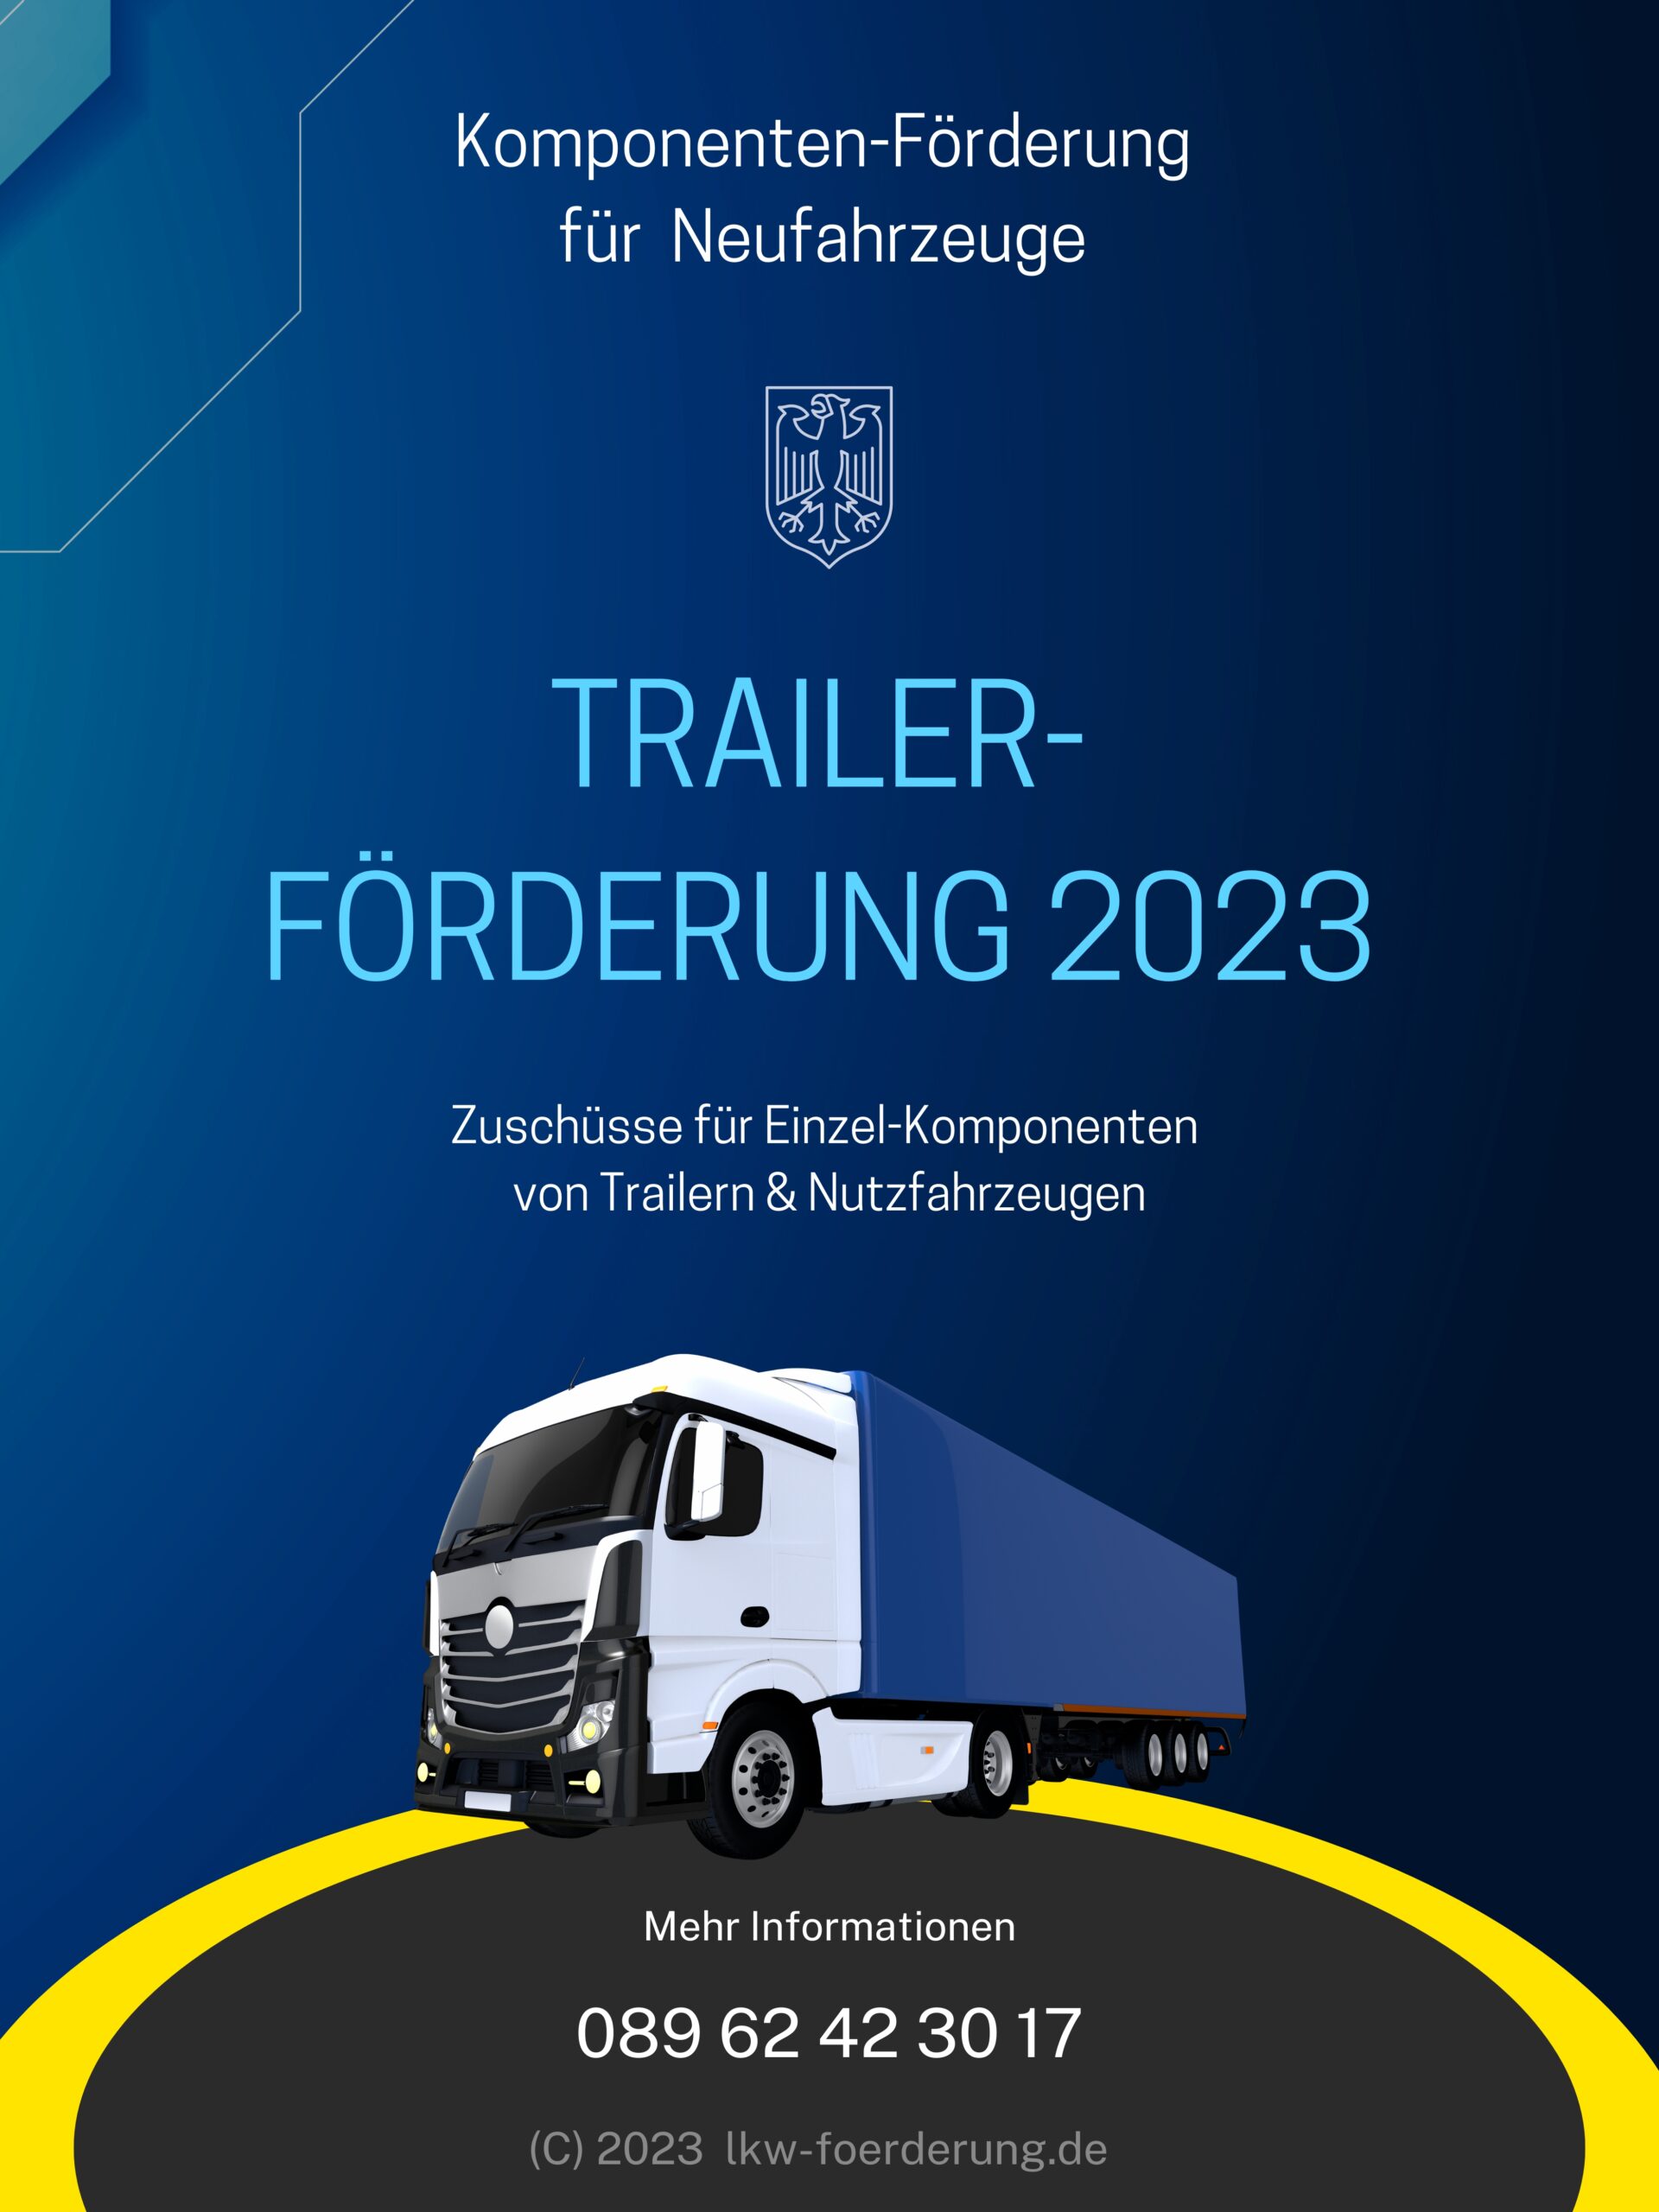 komponenten-foerderprogramm-2023-fuer-auflieger-und-lkw-anhaenger